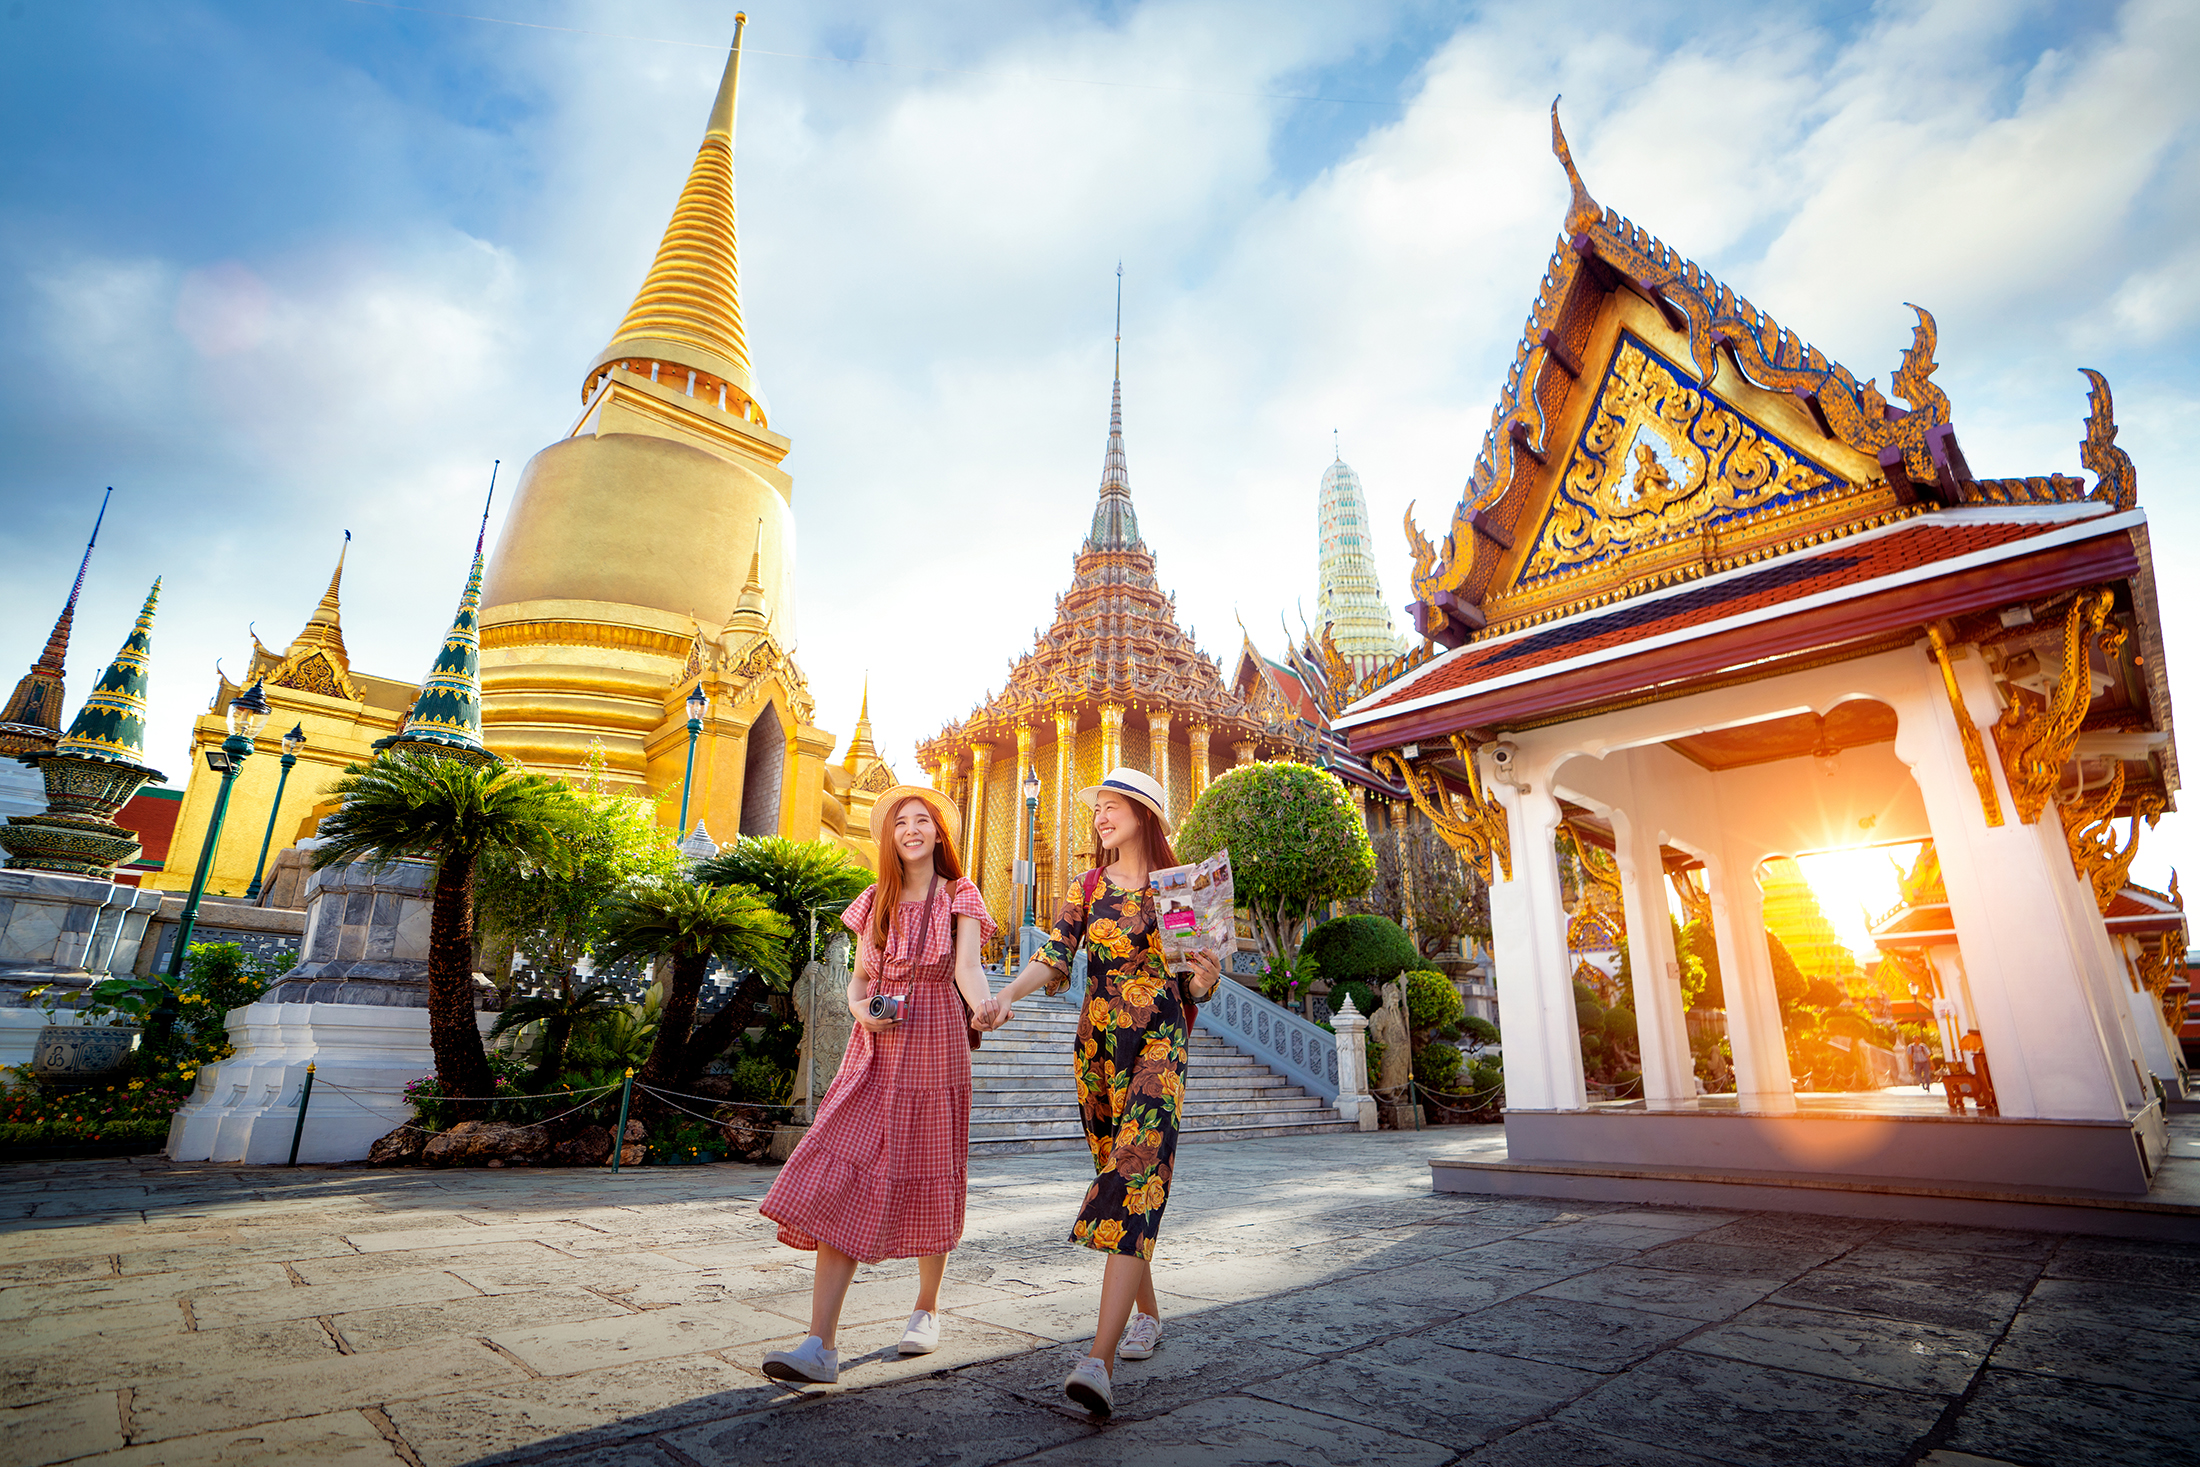 Dành cả một ngày để tìm kiếm những bức ảnh đẹp nhất tại Bangkok. Tận hưởng cảm giác thư giãn khi khám phá thành phố với nhiều vị trí đẹp như cung điện, đền chùa và các thiên đường ẩm thực. Xem hình ảnh để cảm nhận sự tuyệt vời của chuyến đi.